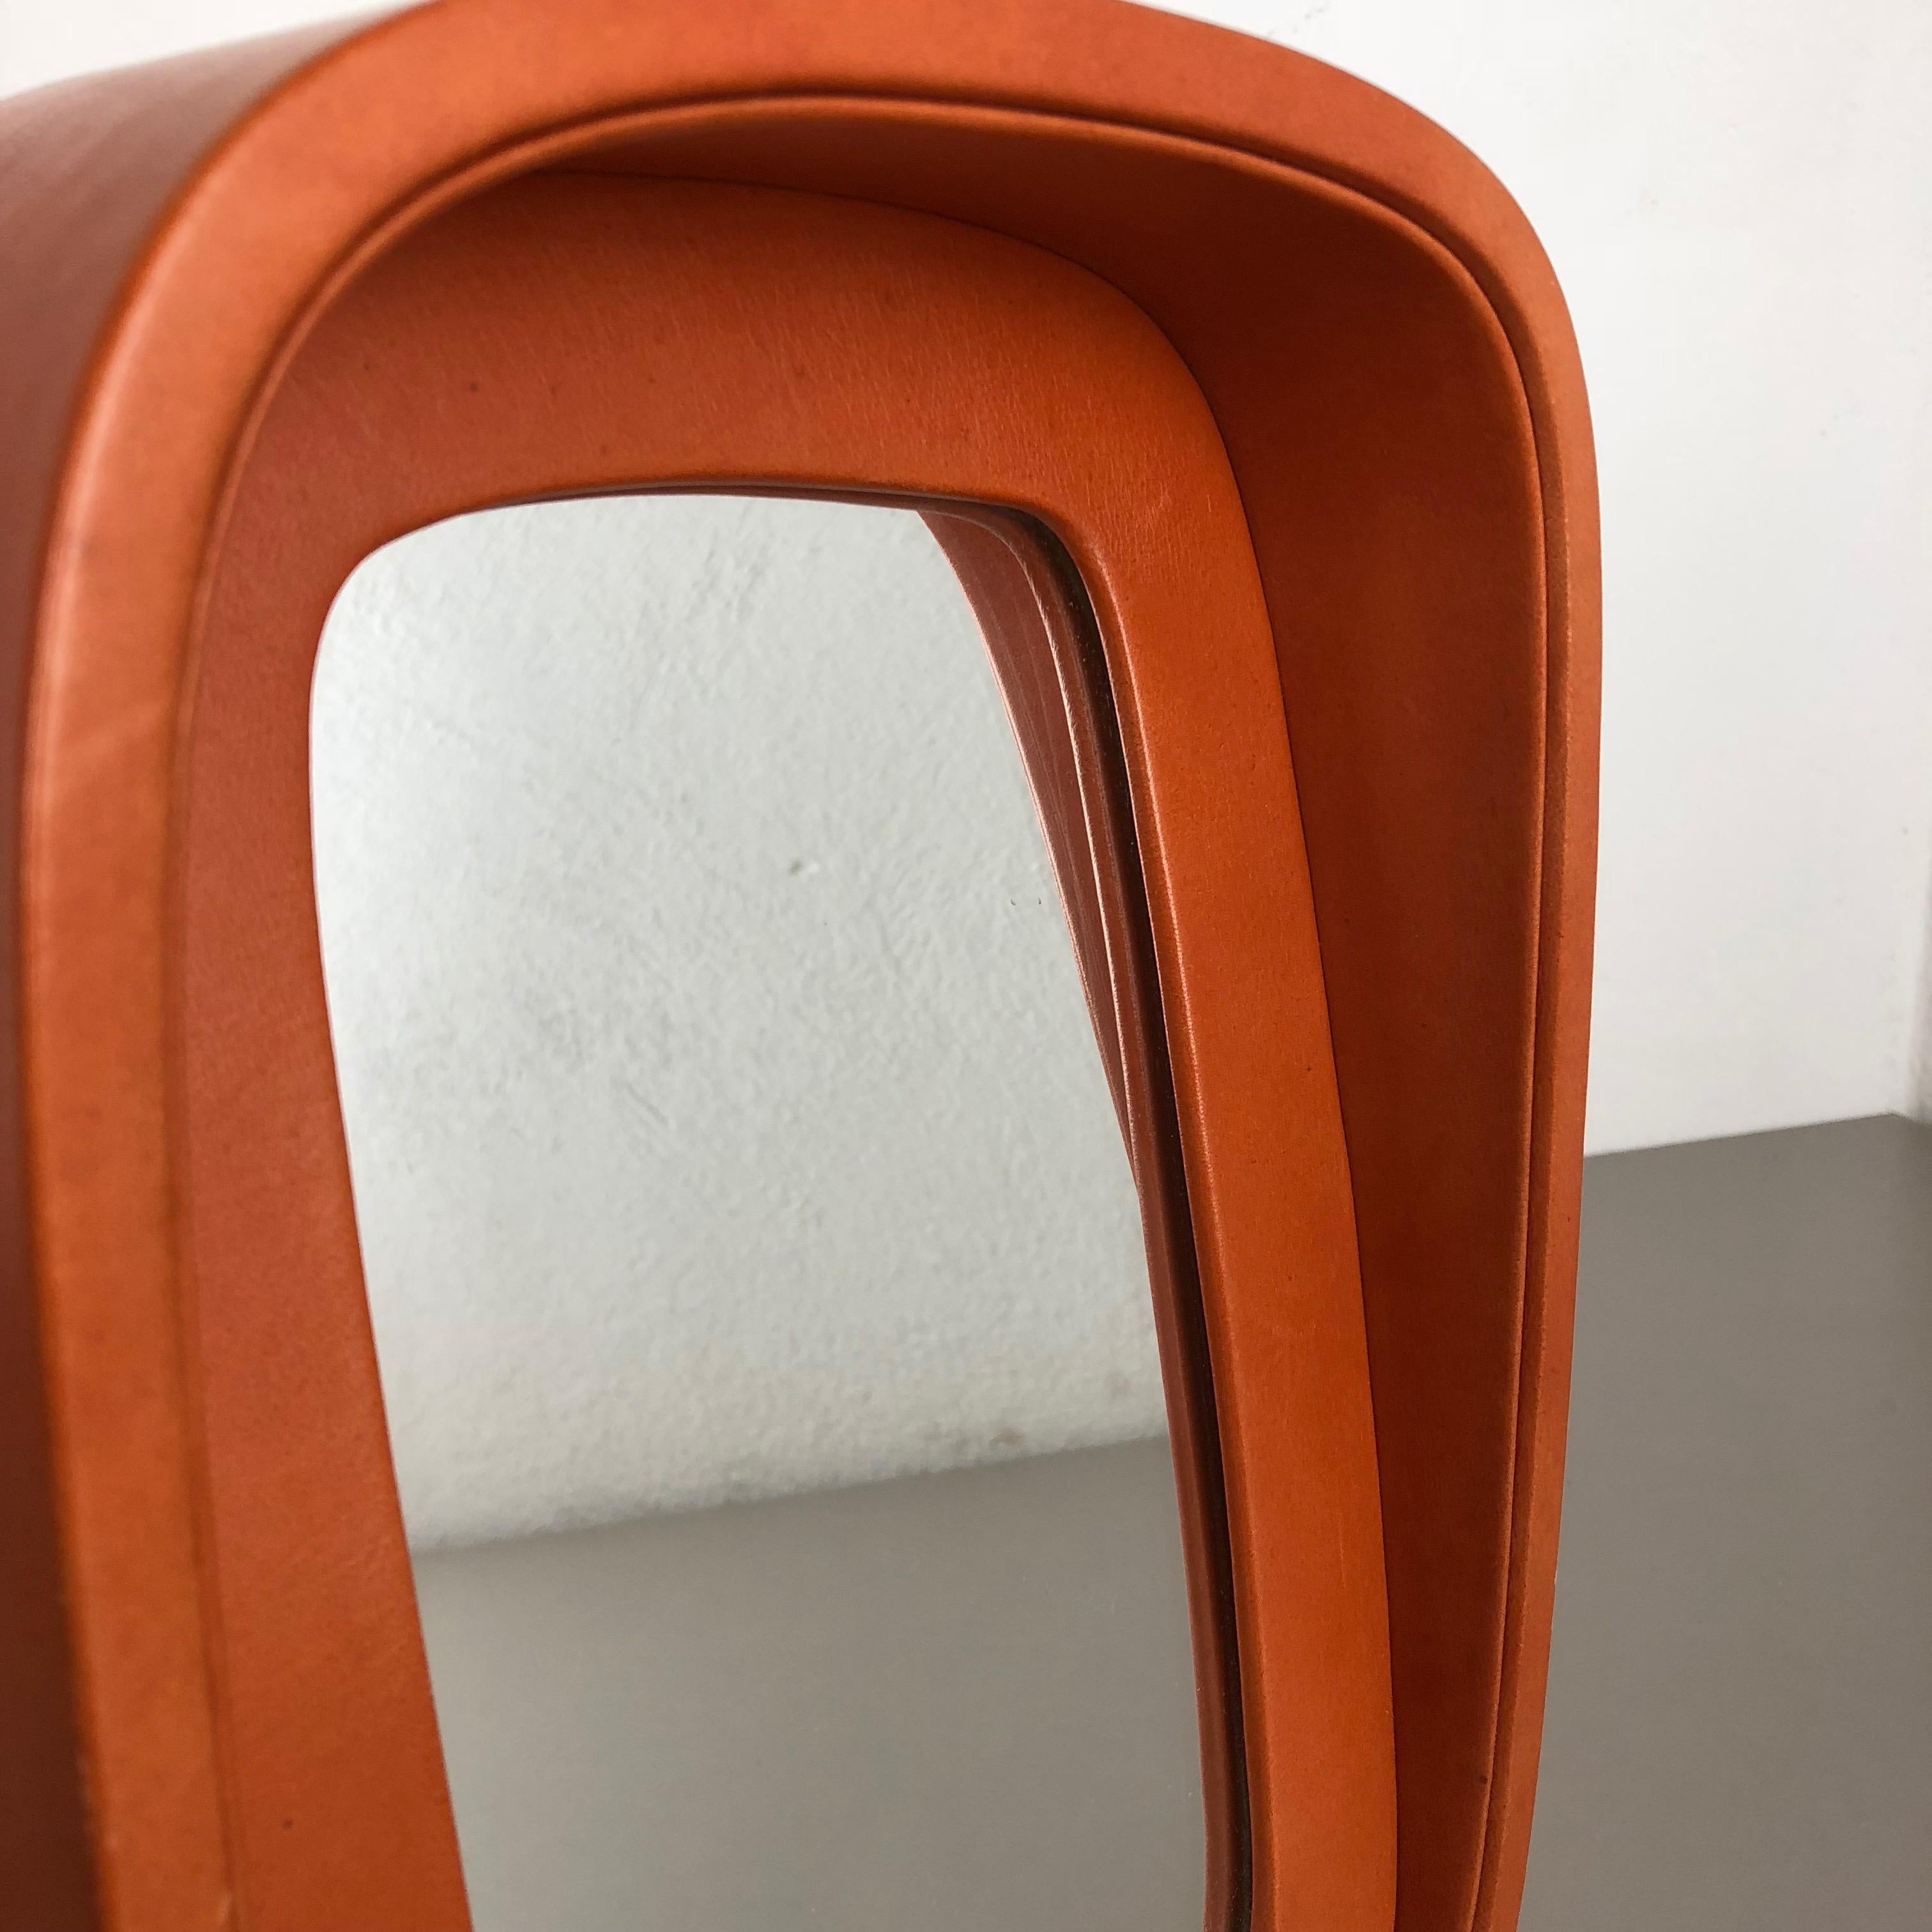 Modernist Leather Table Mirror Vereinigte Werkstätten Attrib., Germany, 1960s For Sale 1